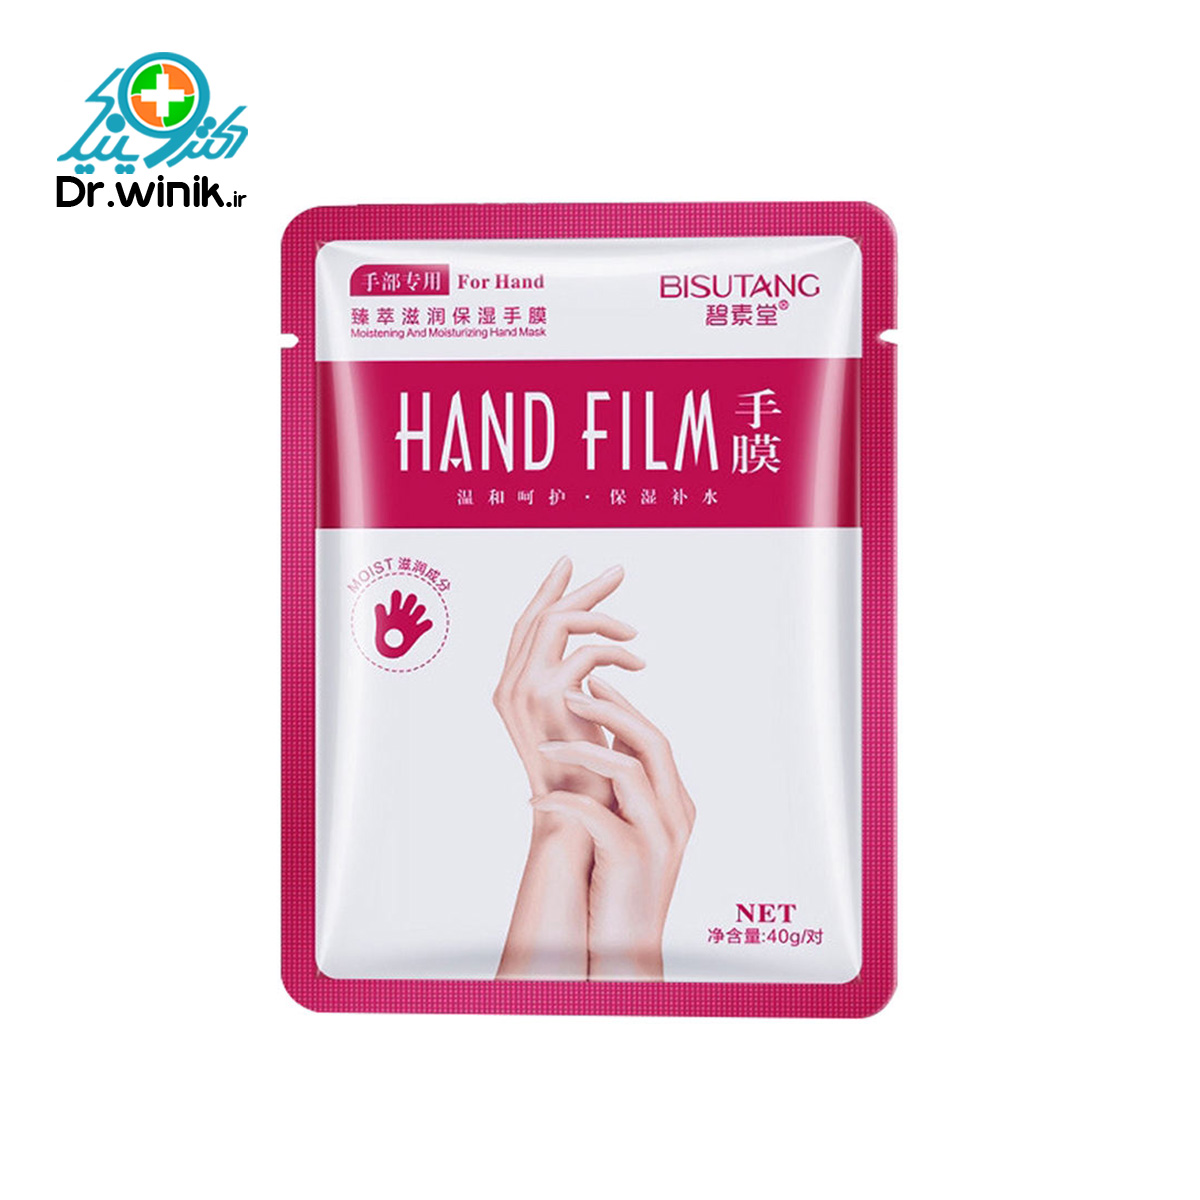  ماسک دست بیسوتانگ مدل Hand Film